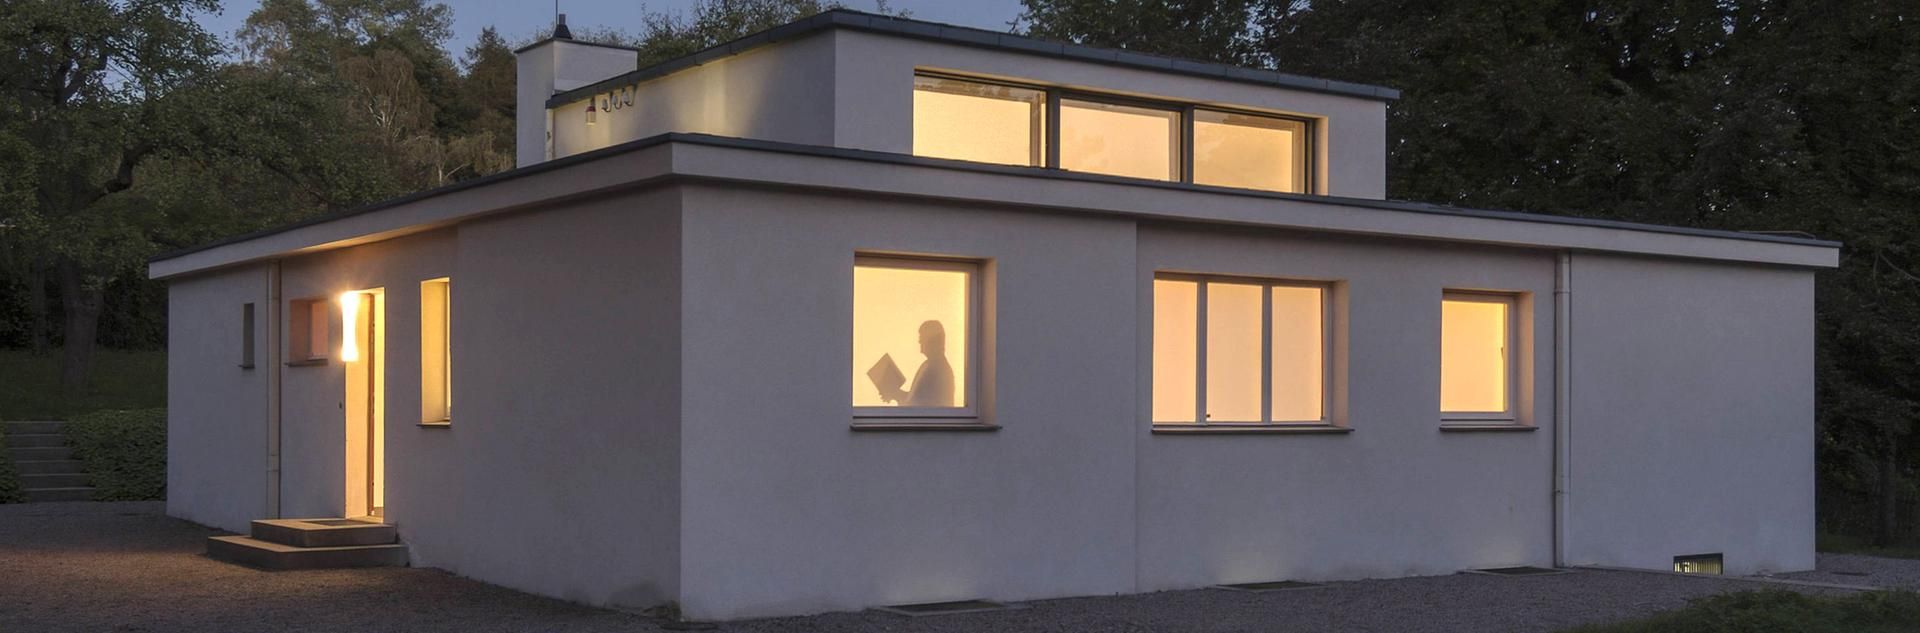 klassisch modern: Haus Am Horn – 100 Jahre Bauhaus in Weimar